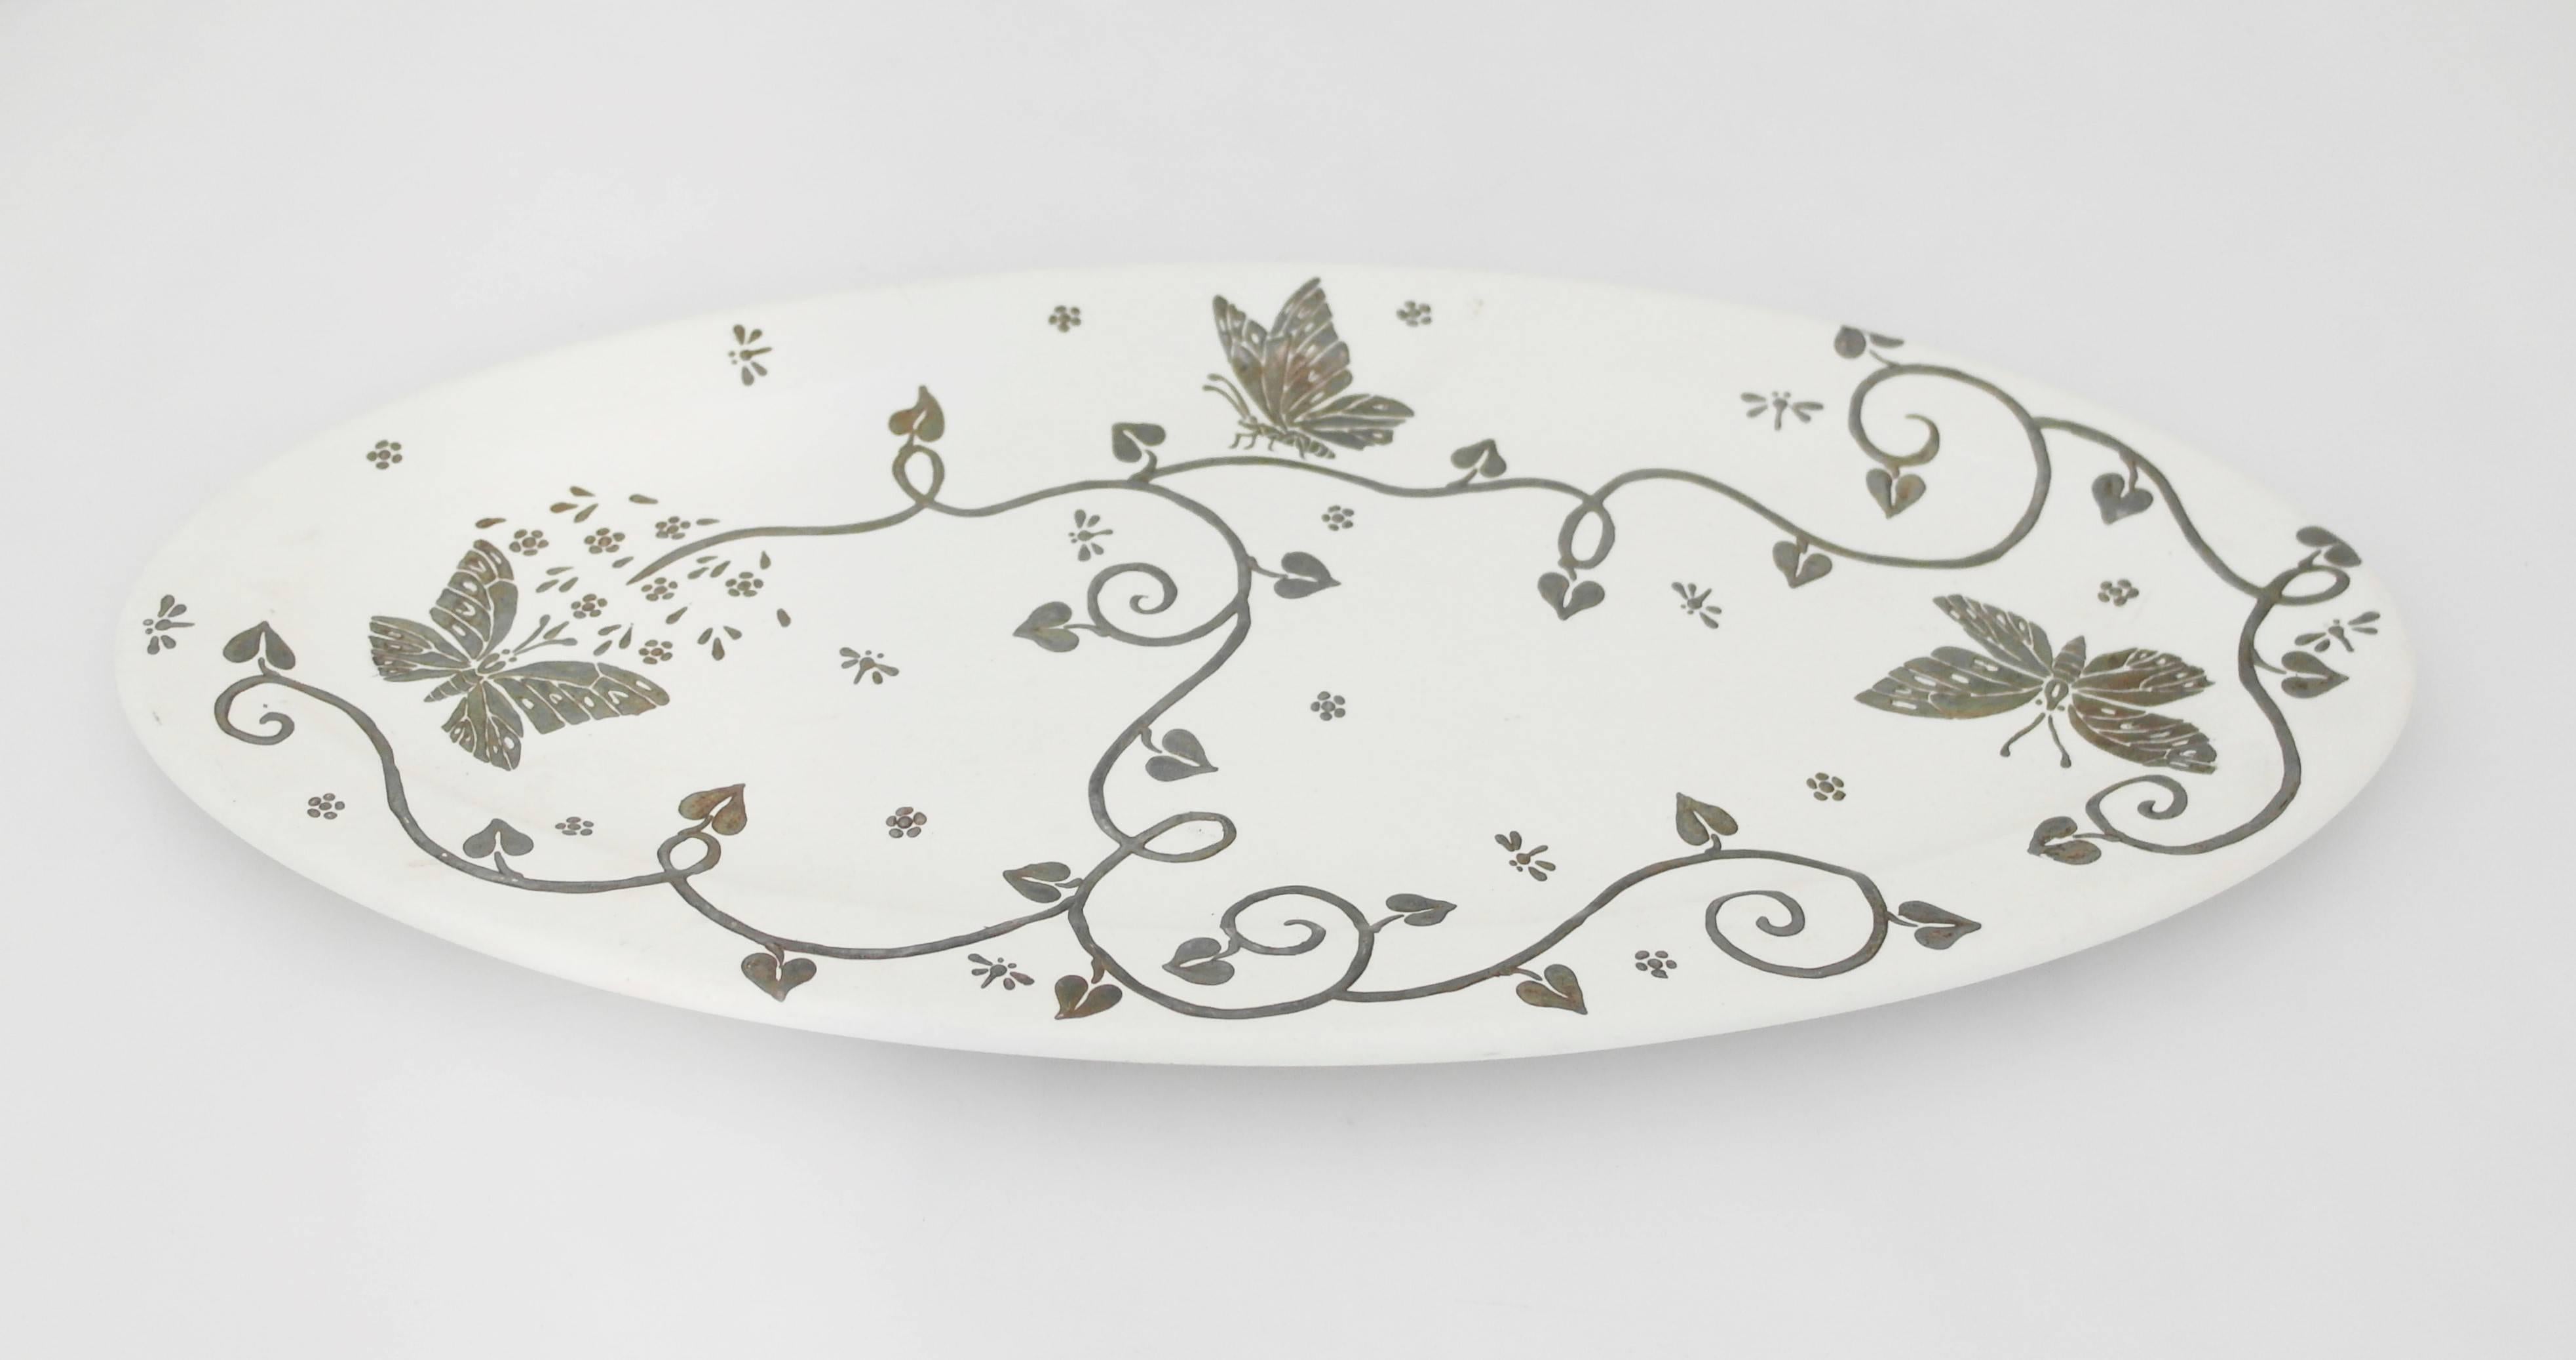 Contemporary Emilia Castillo Ceramic Plate with Sterling Silver Overlay